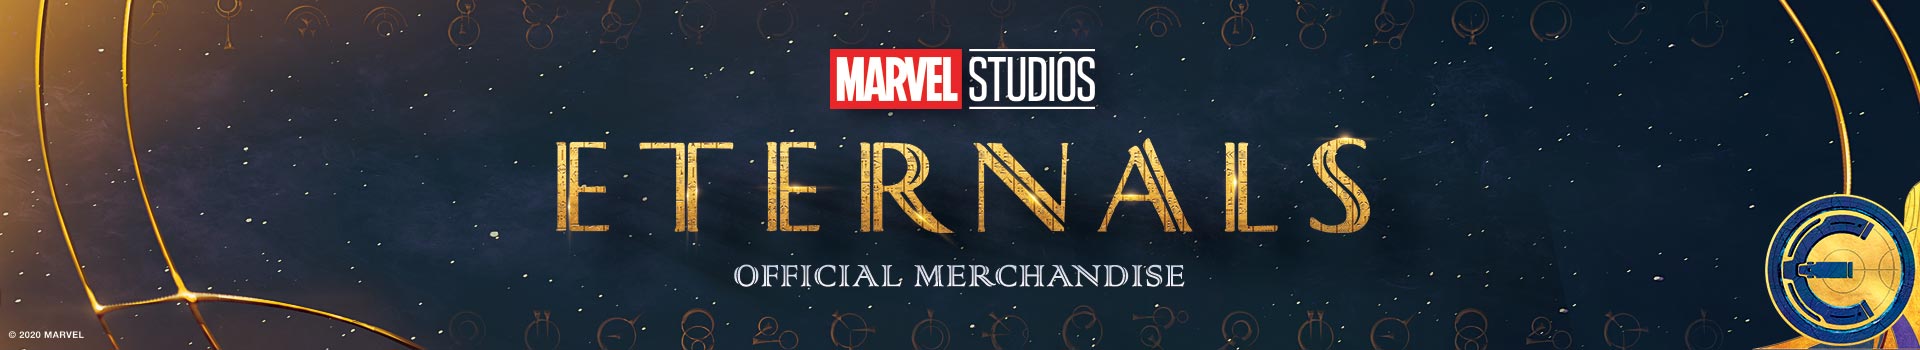 Eternal - Official Merchandise